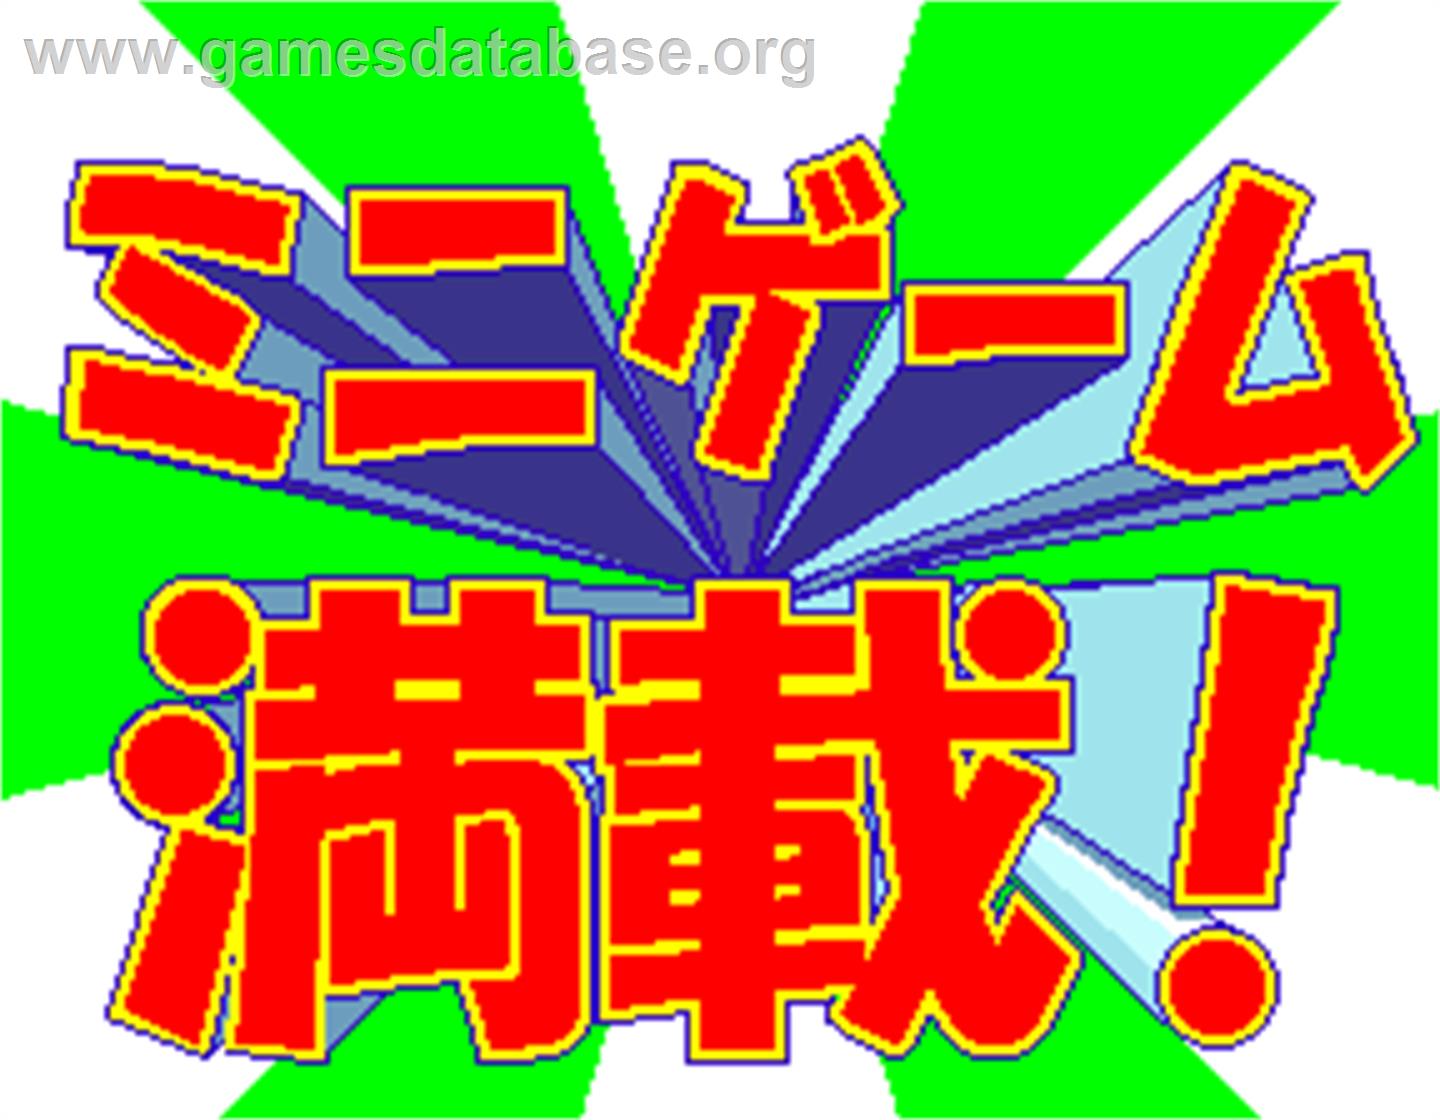 Bishi Bashi Championship Mini Game Senshuken - Arcade - Artwork - Title Screen